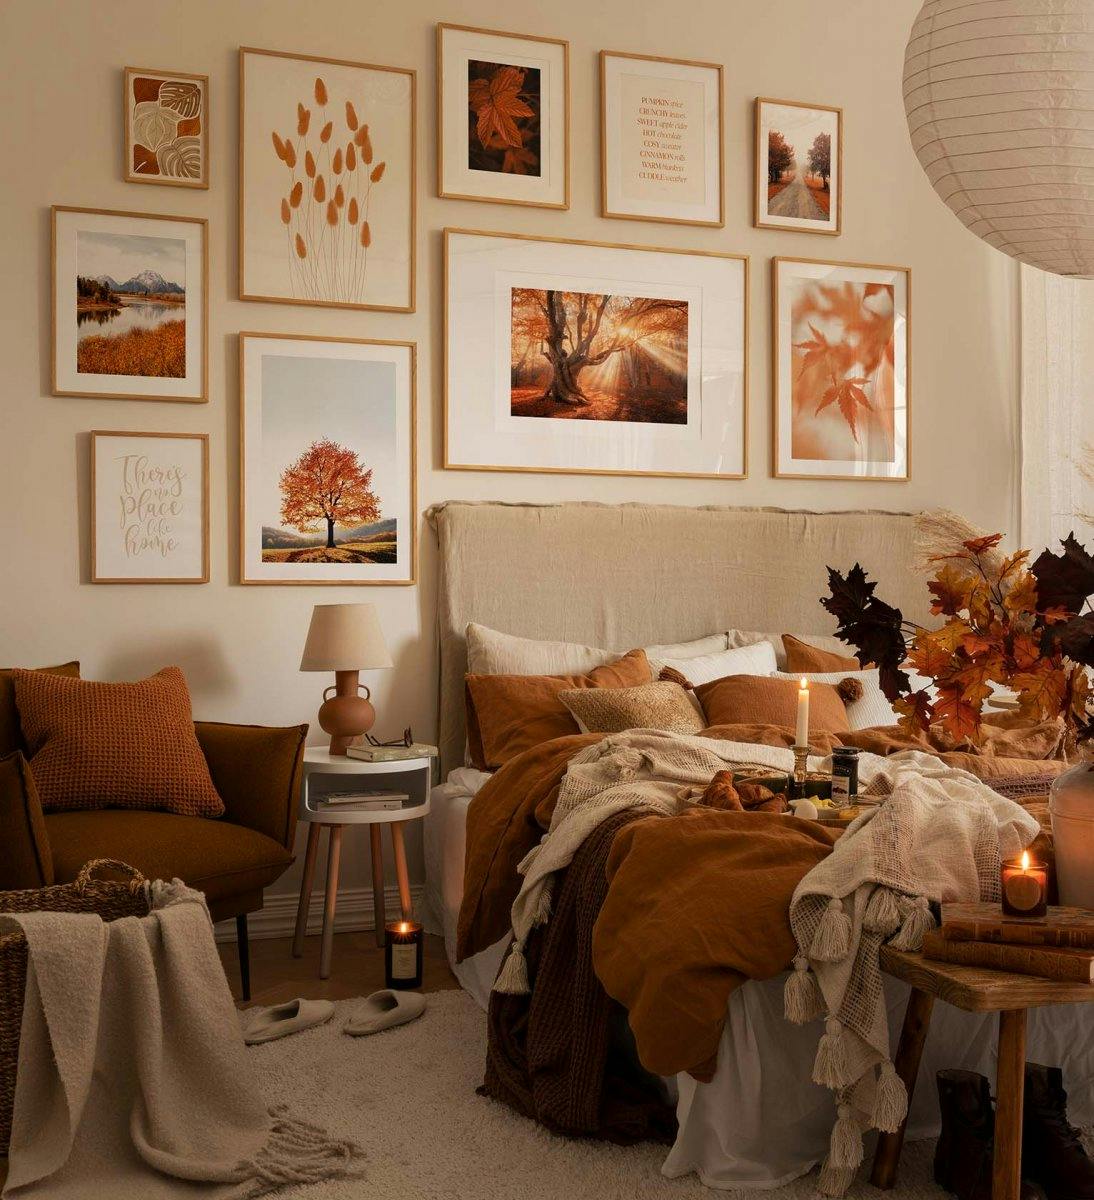 Galerijwand met inspiratie uit de herfst met prints en foto's in oranje en eiken lijsten voor slaapkamer